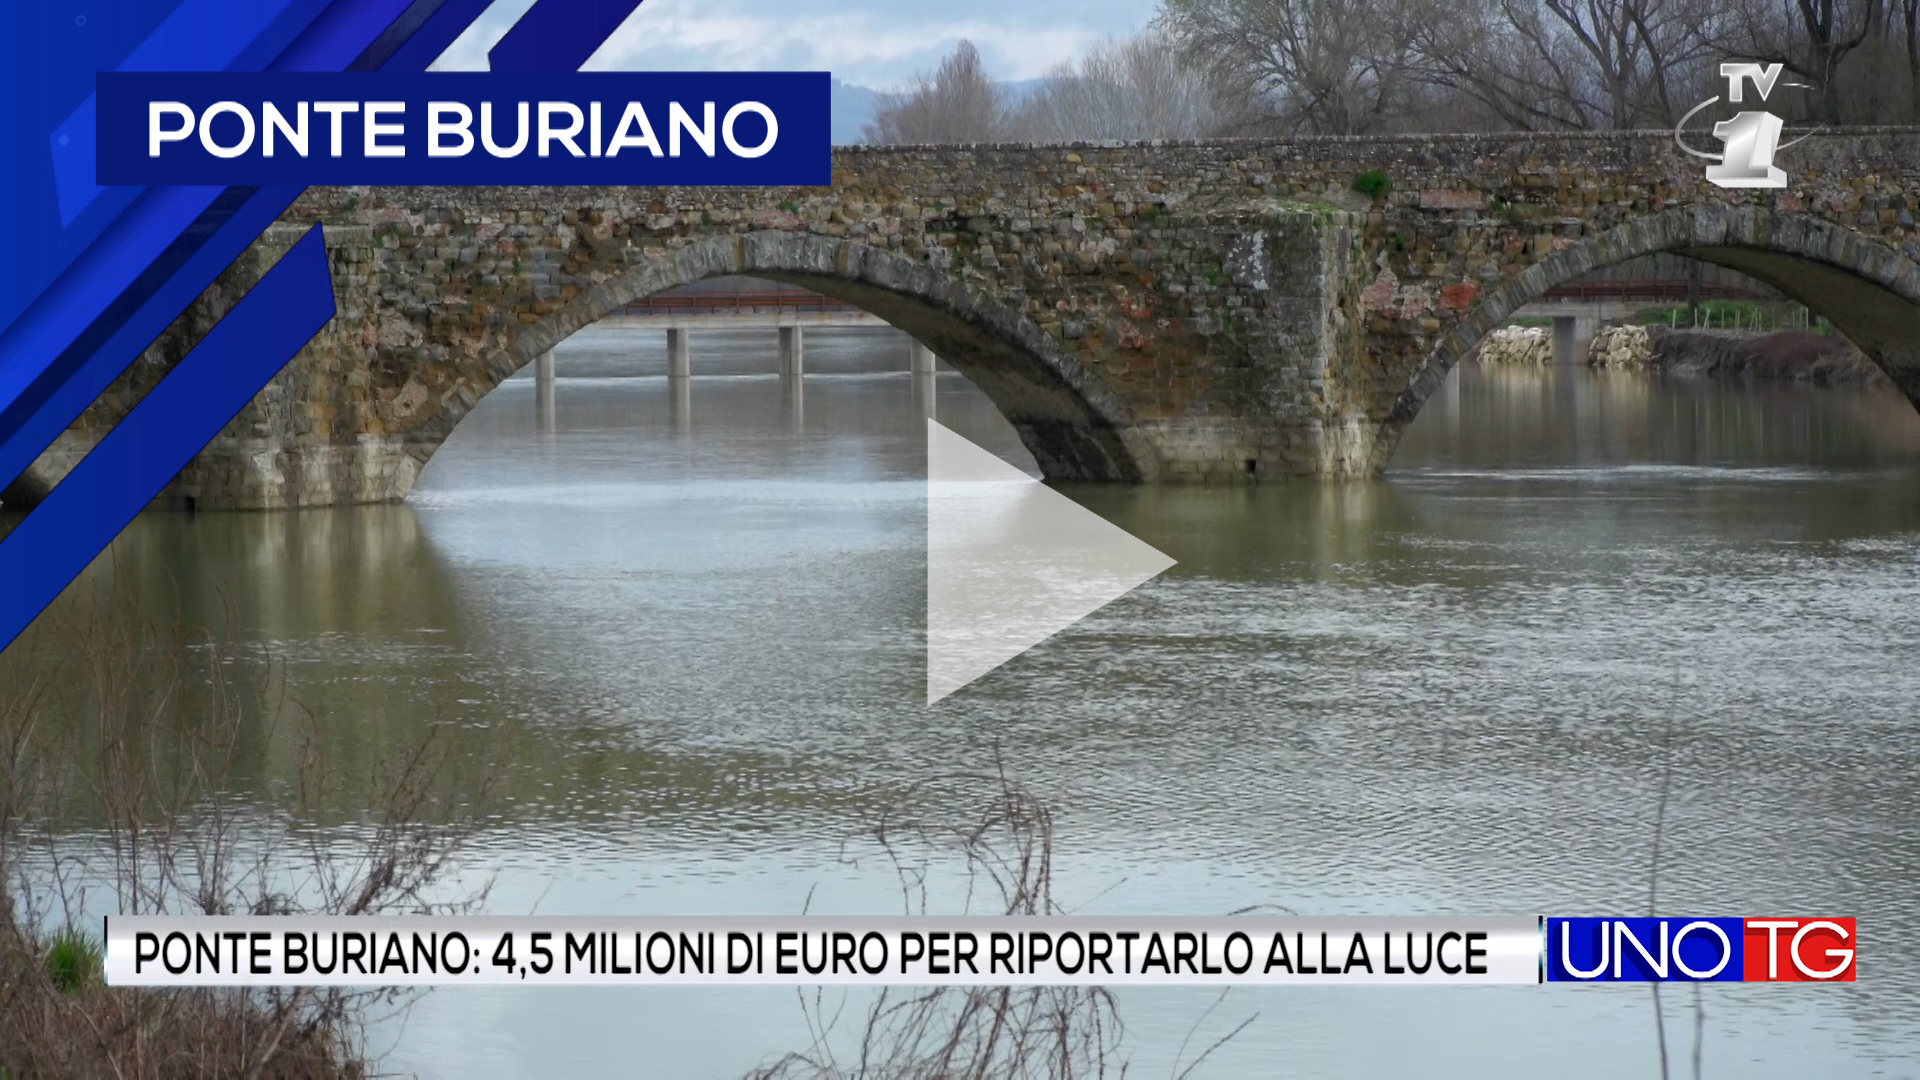 Ponte Buriano: 4,5 milioni di euro per riportarlo alla luce